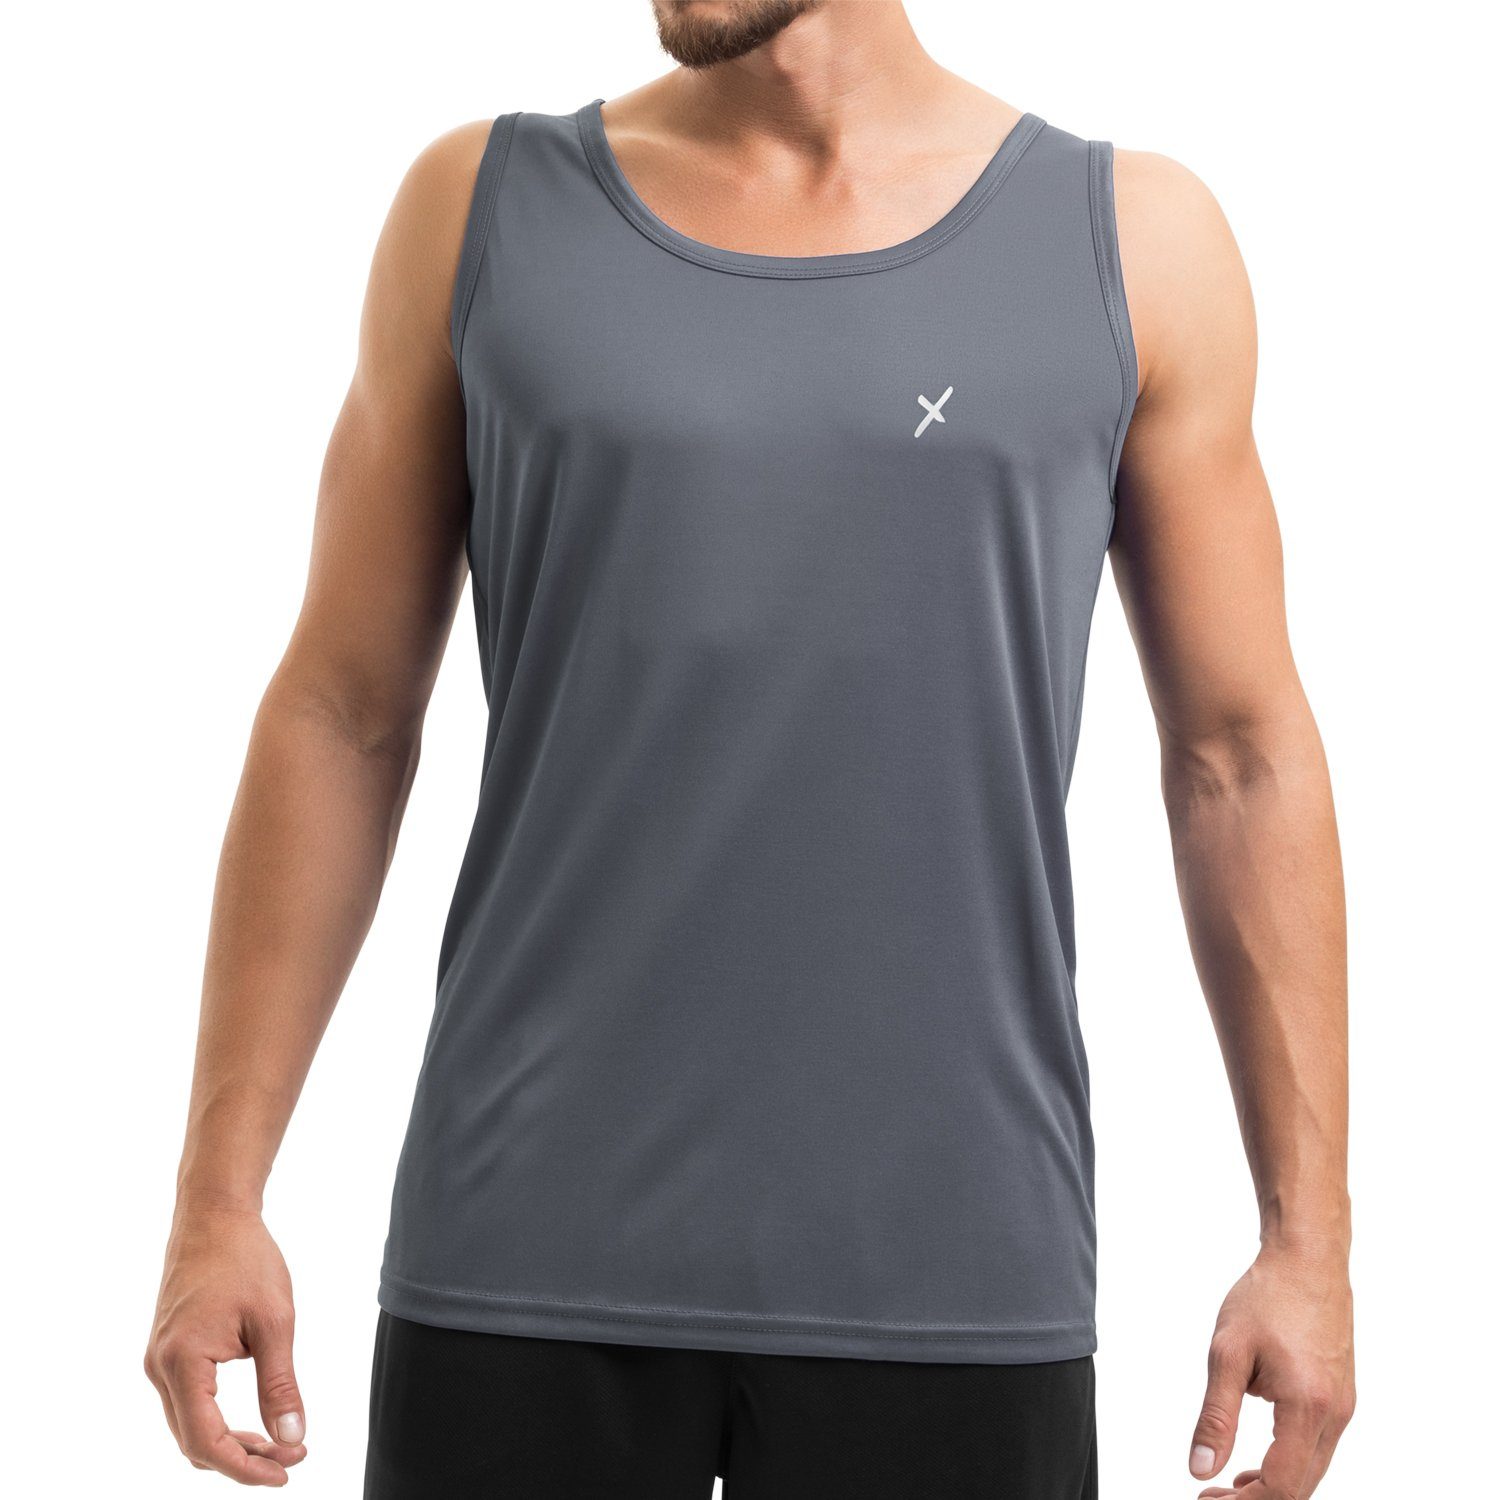 CFLEX Trainingsshirt Herren Sport Shirt Fitness Tanktop Sportswear Collection Grau